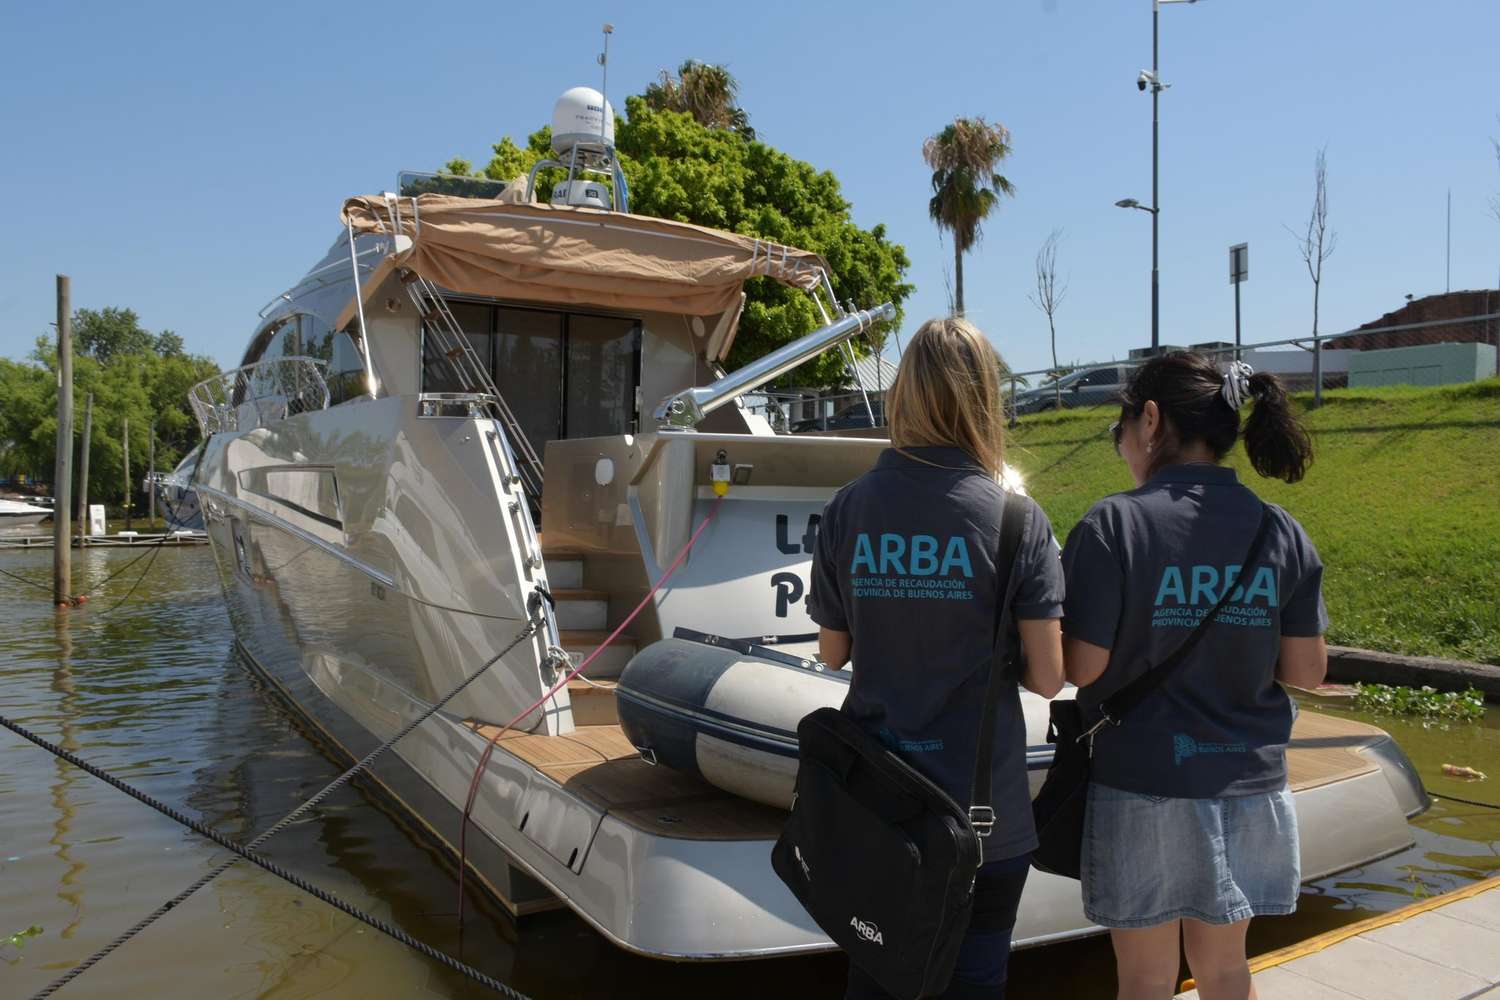 ARBA podría retener unas 1400 embarcaciones de lujo